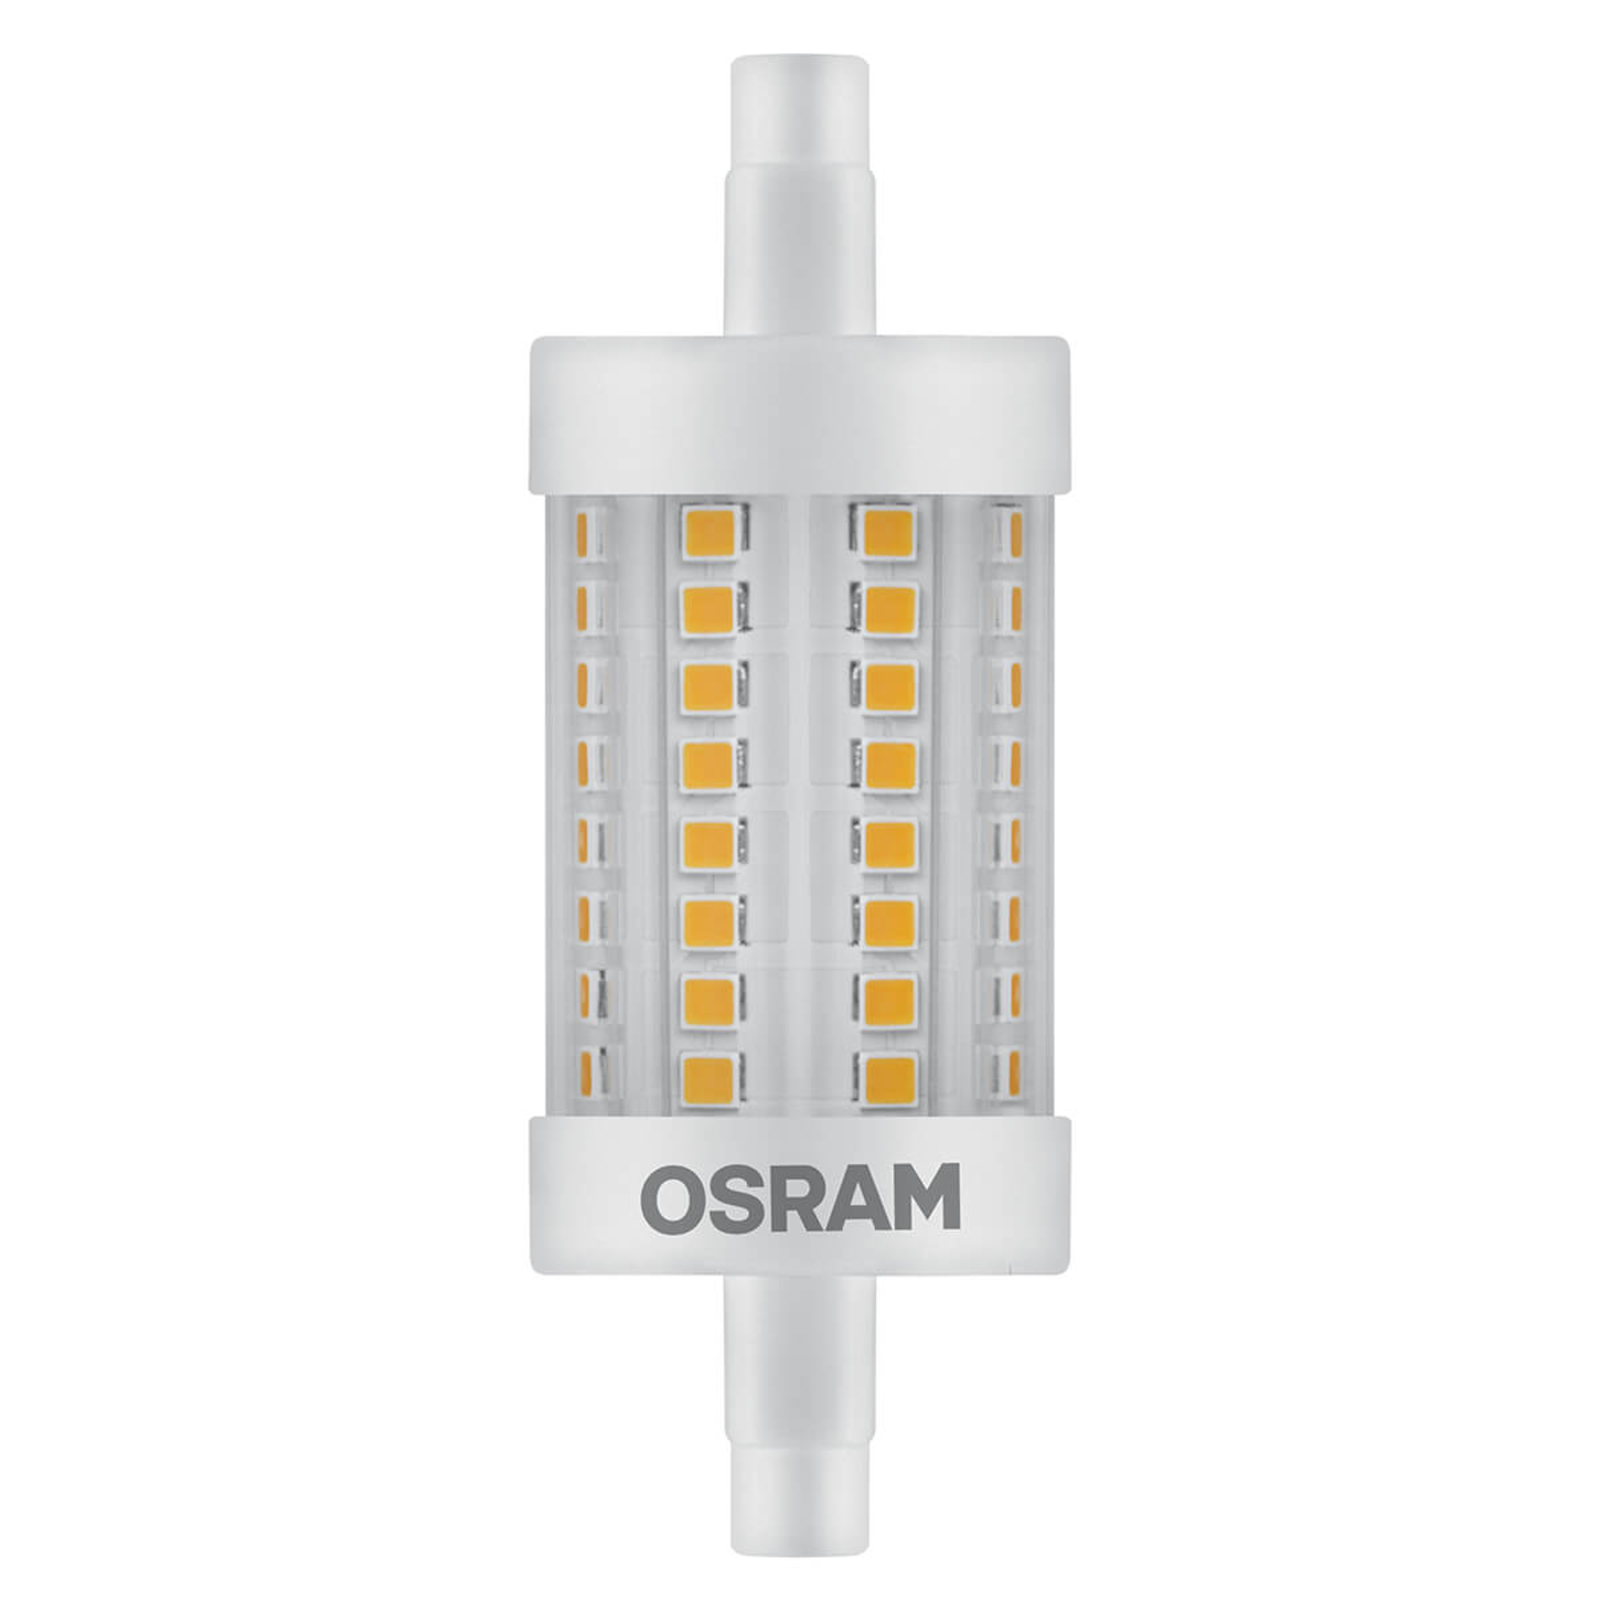 OSRAM żarówka prętowa LED R7s 8,2W, 1 055 lm